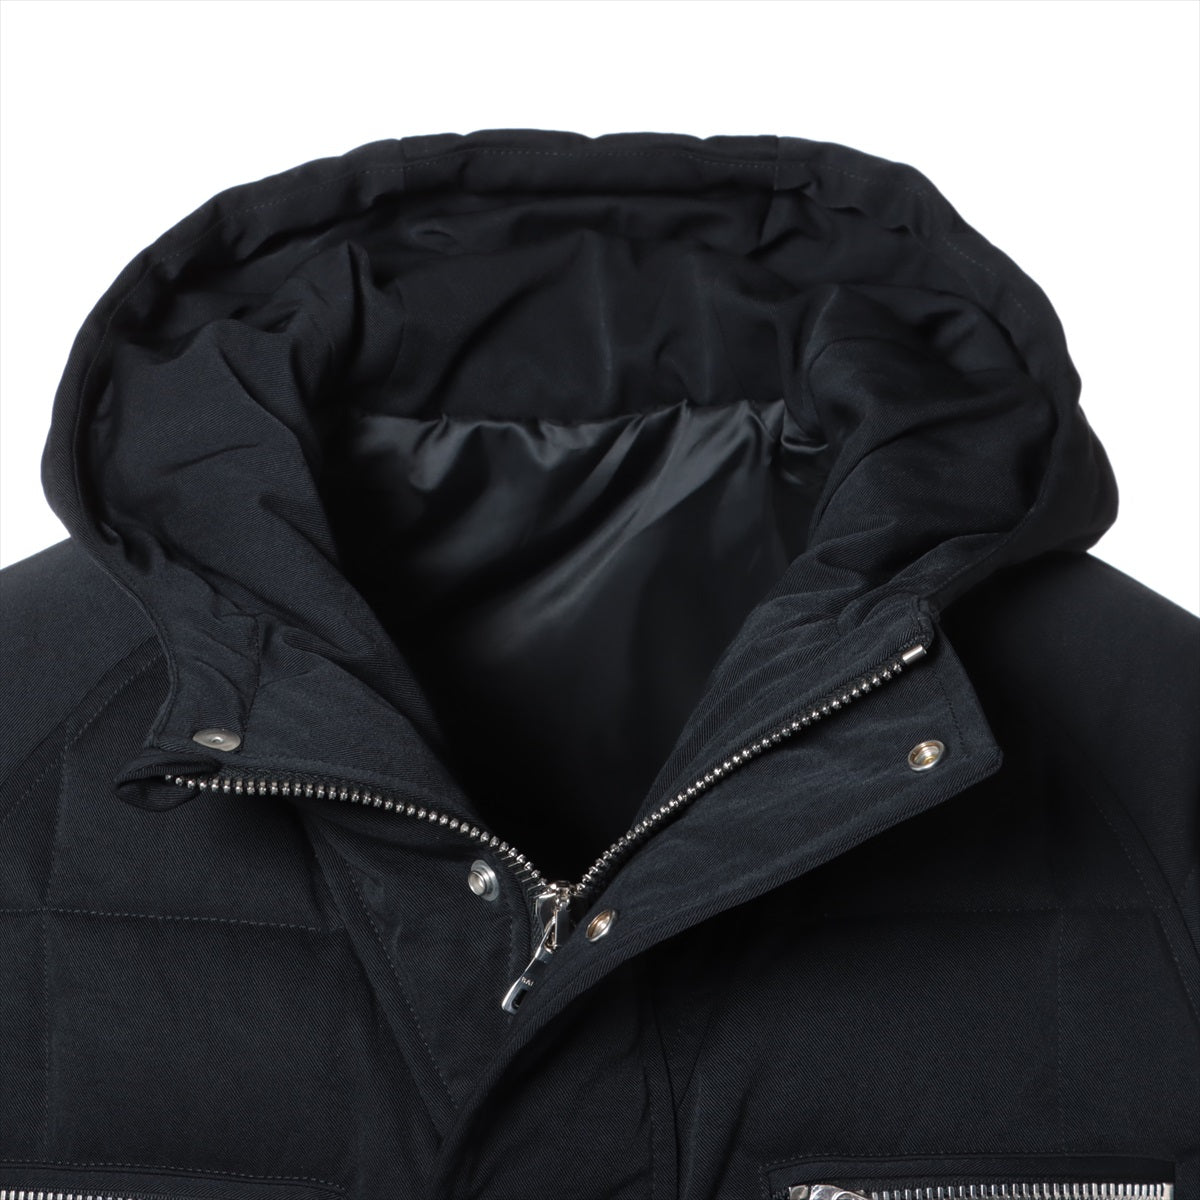 Balmain 21AW Polyester Down jacket 46 Men's Black  8817X113 back logo